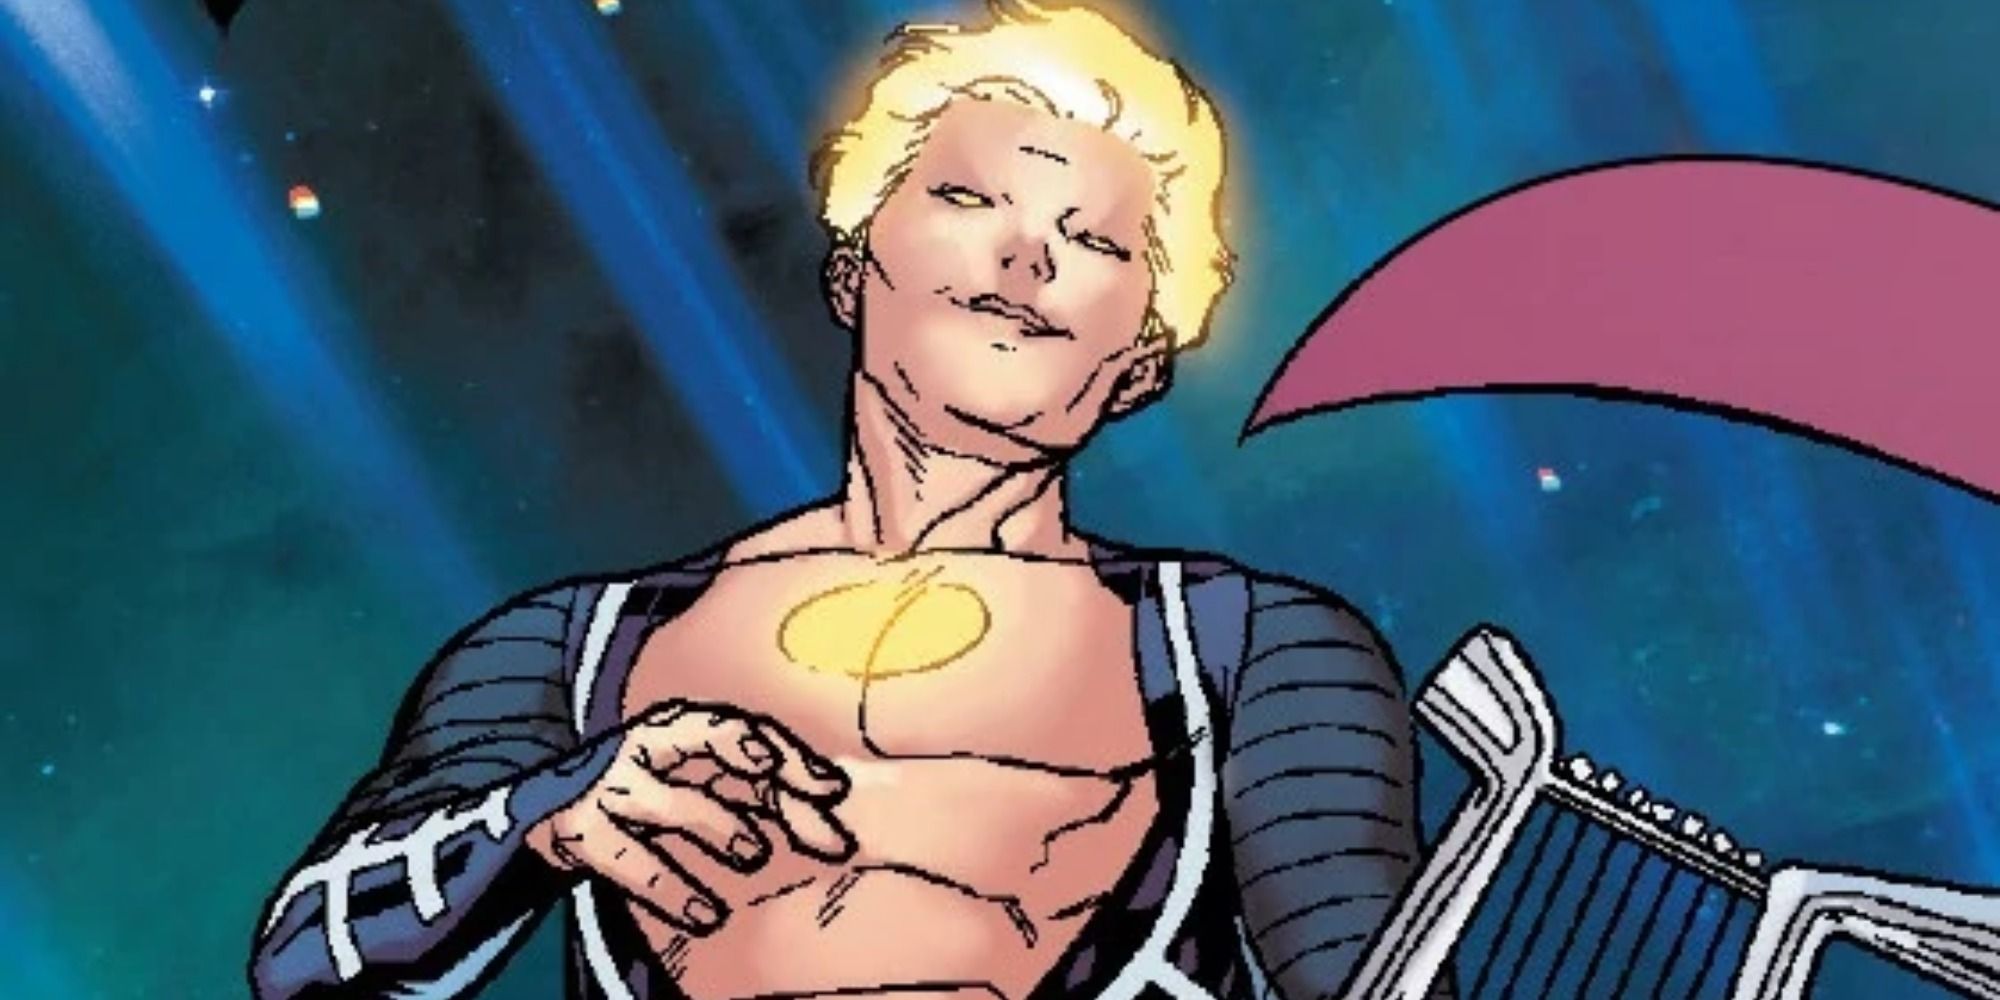 Apollo uses his power in Marvel Comics.